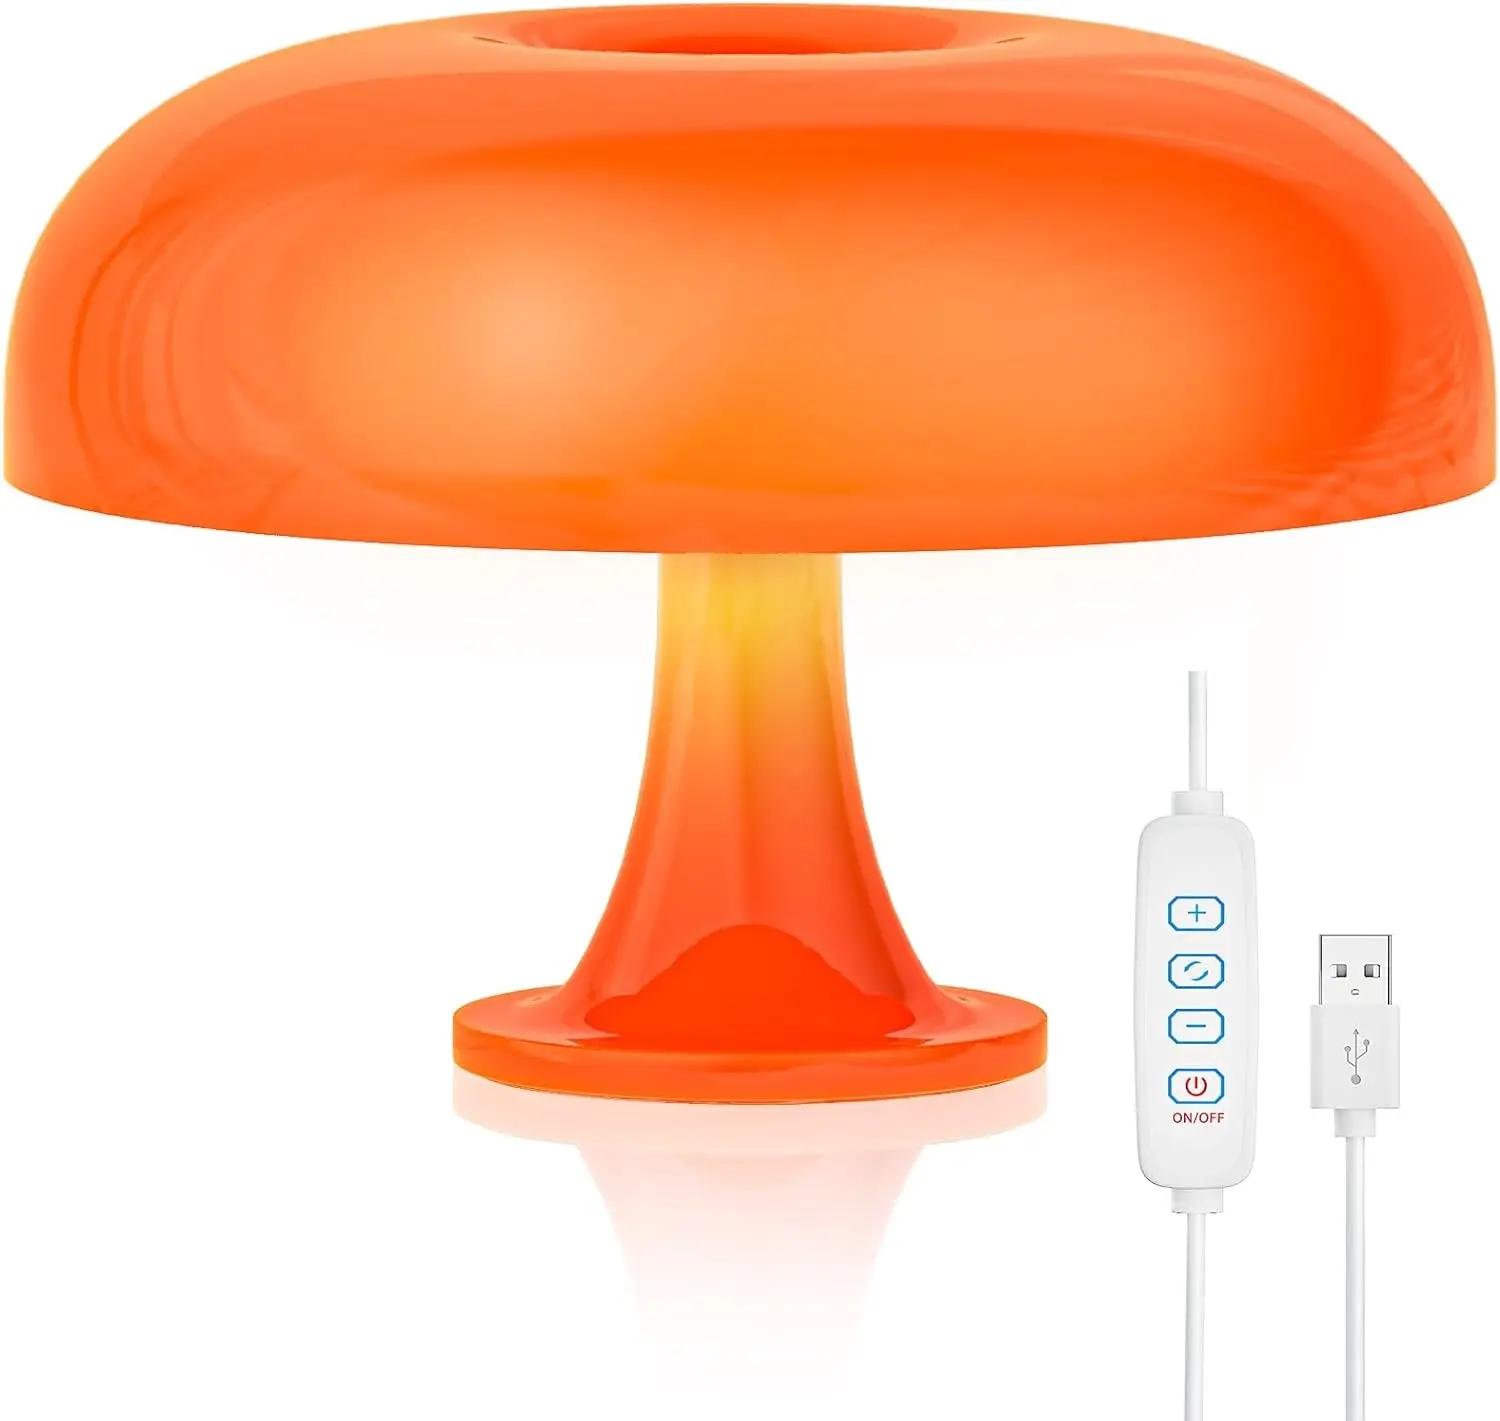 버섯 테이블 램프 책상 주변 조명 침대 옆 침실 거실 장식 빈티지 현대 복고풍 분위기 LED 오렌지 버섯 램프